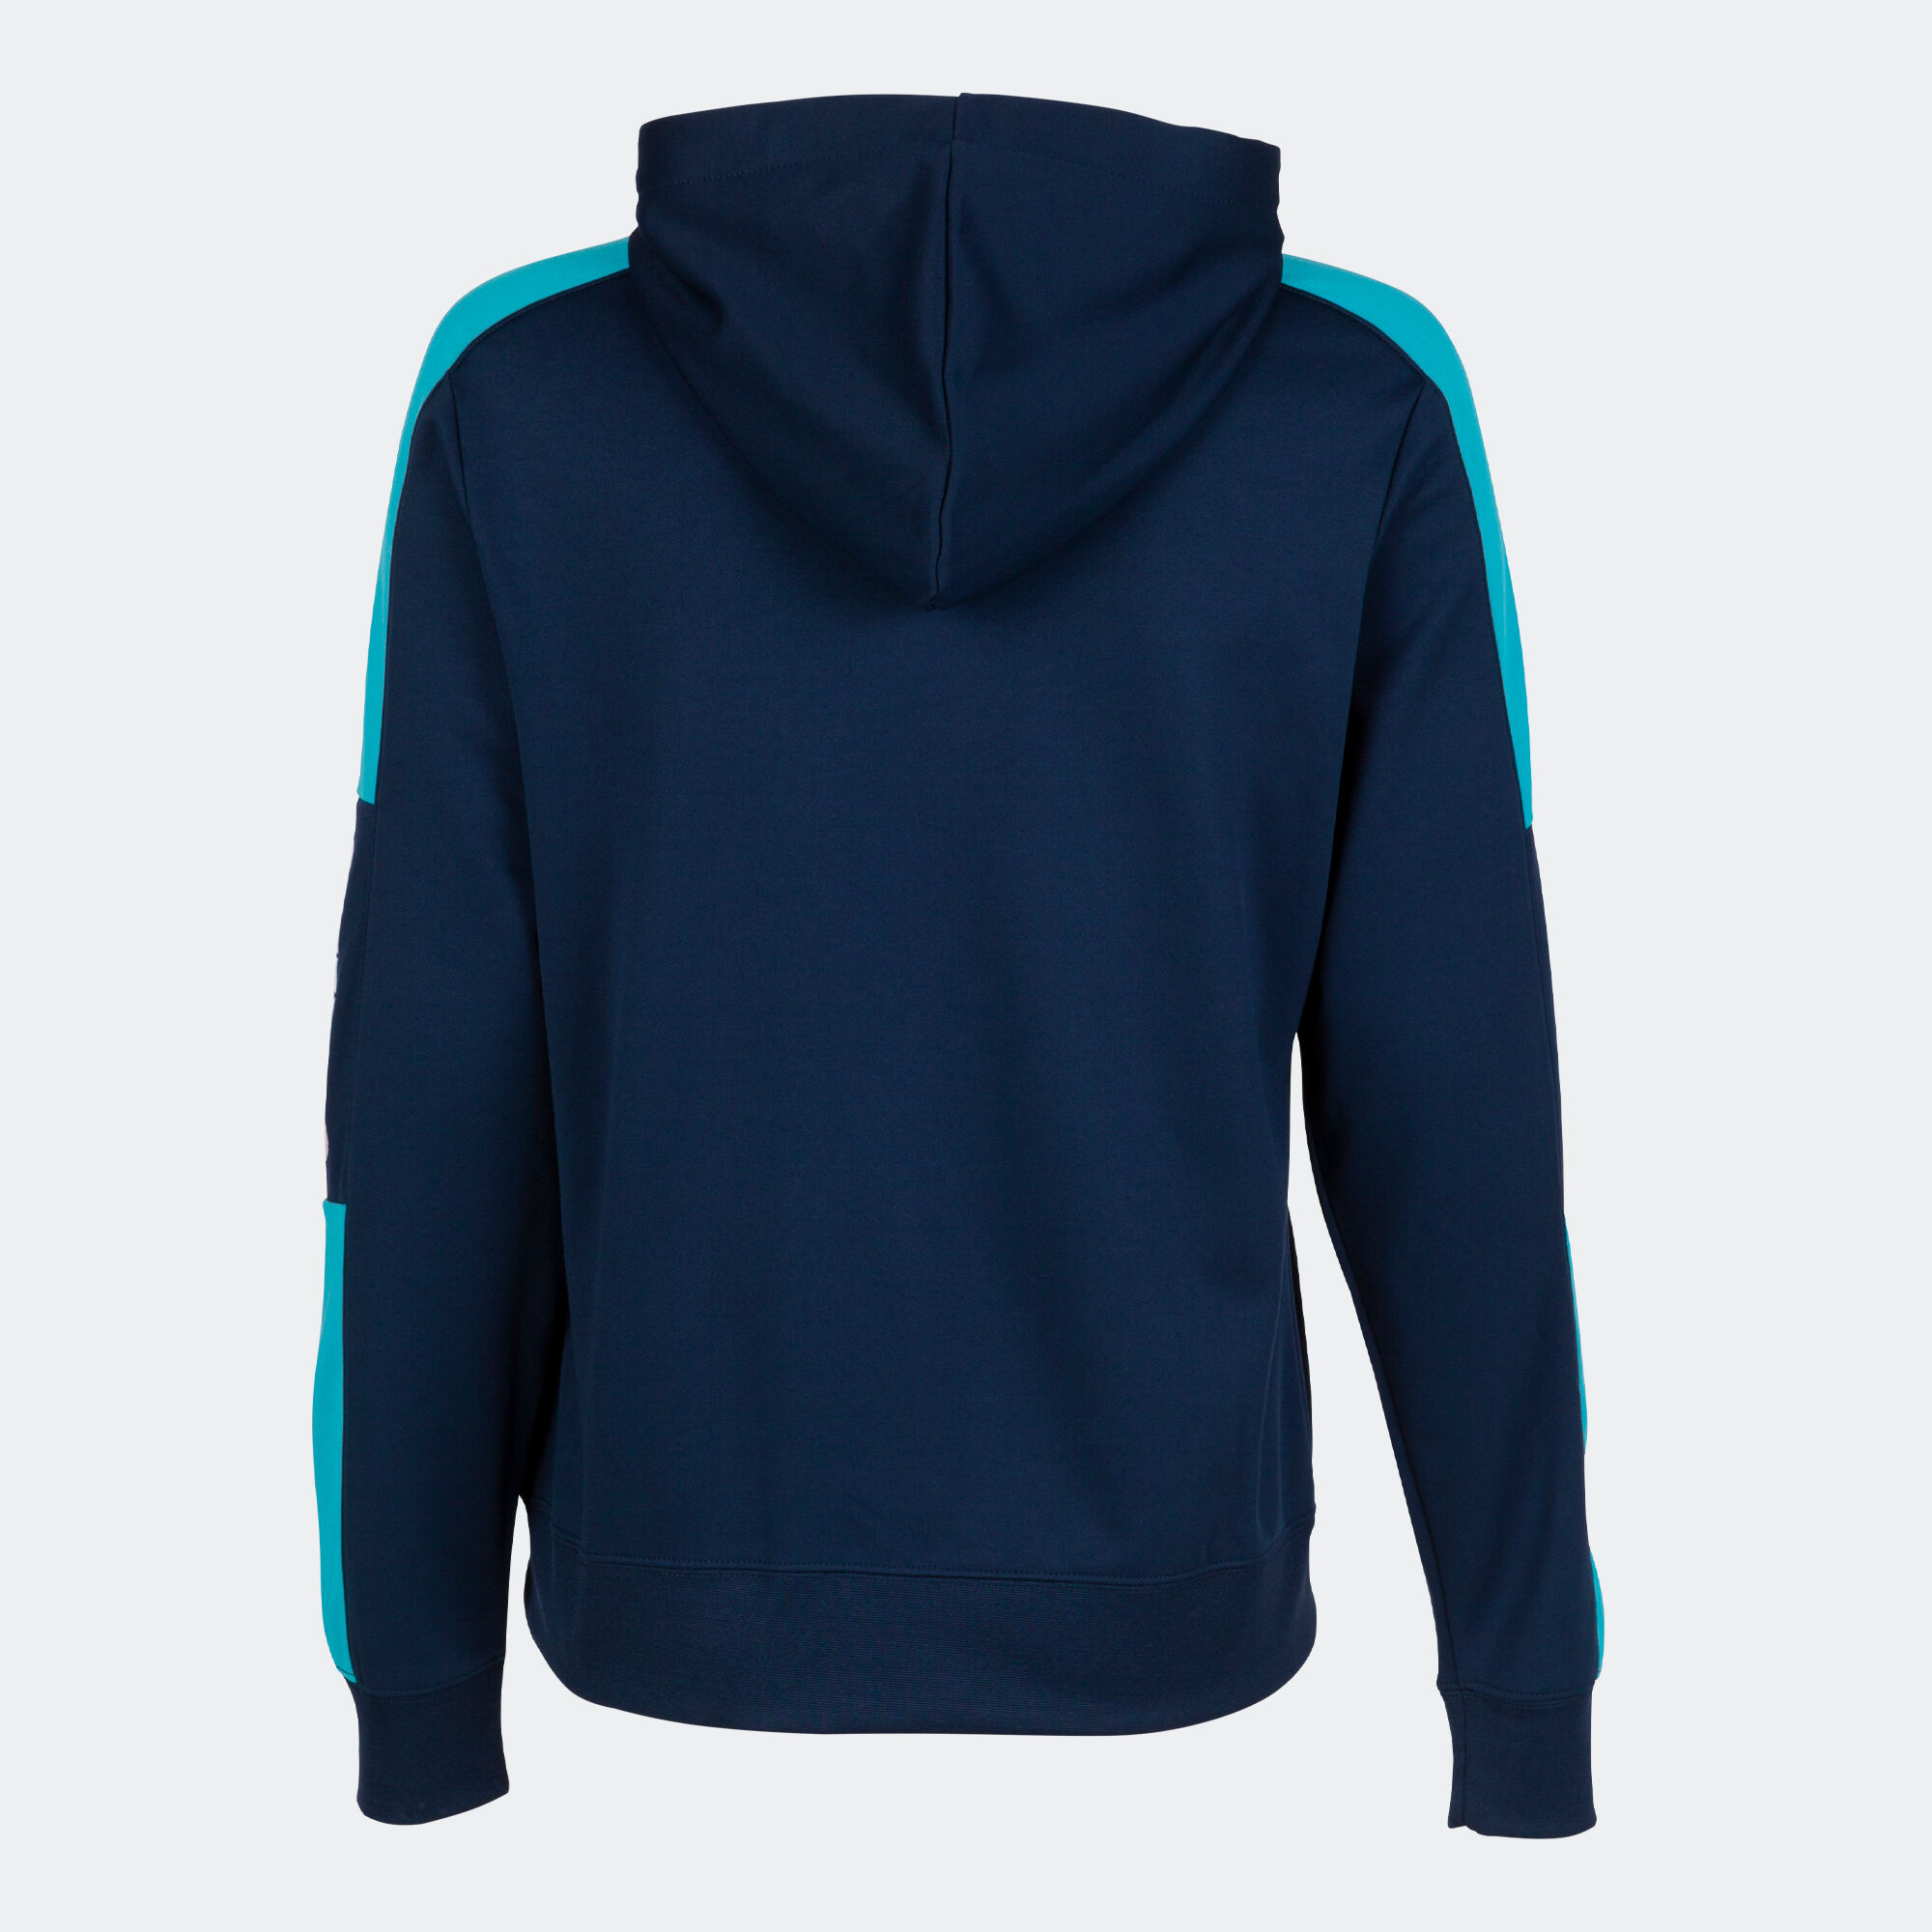 Sweatshirt mit kapuze frau Championship IV marineblau neon-türkis